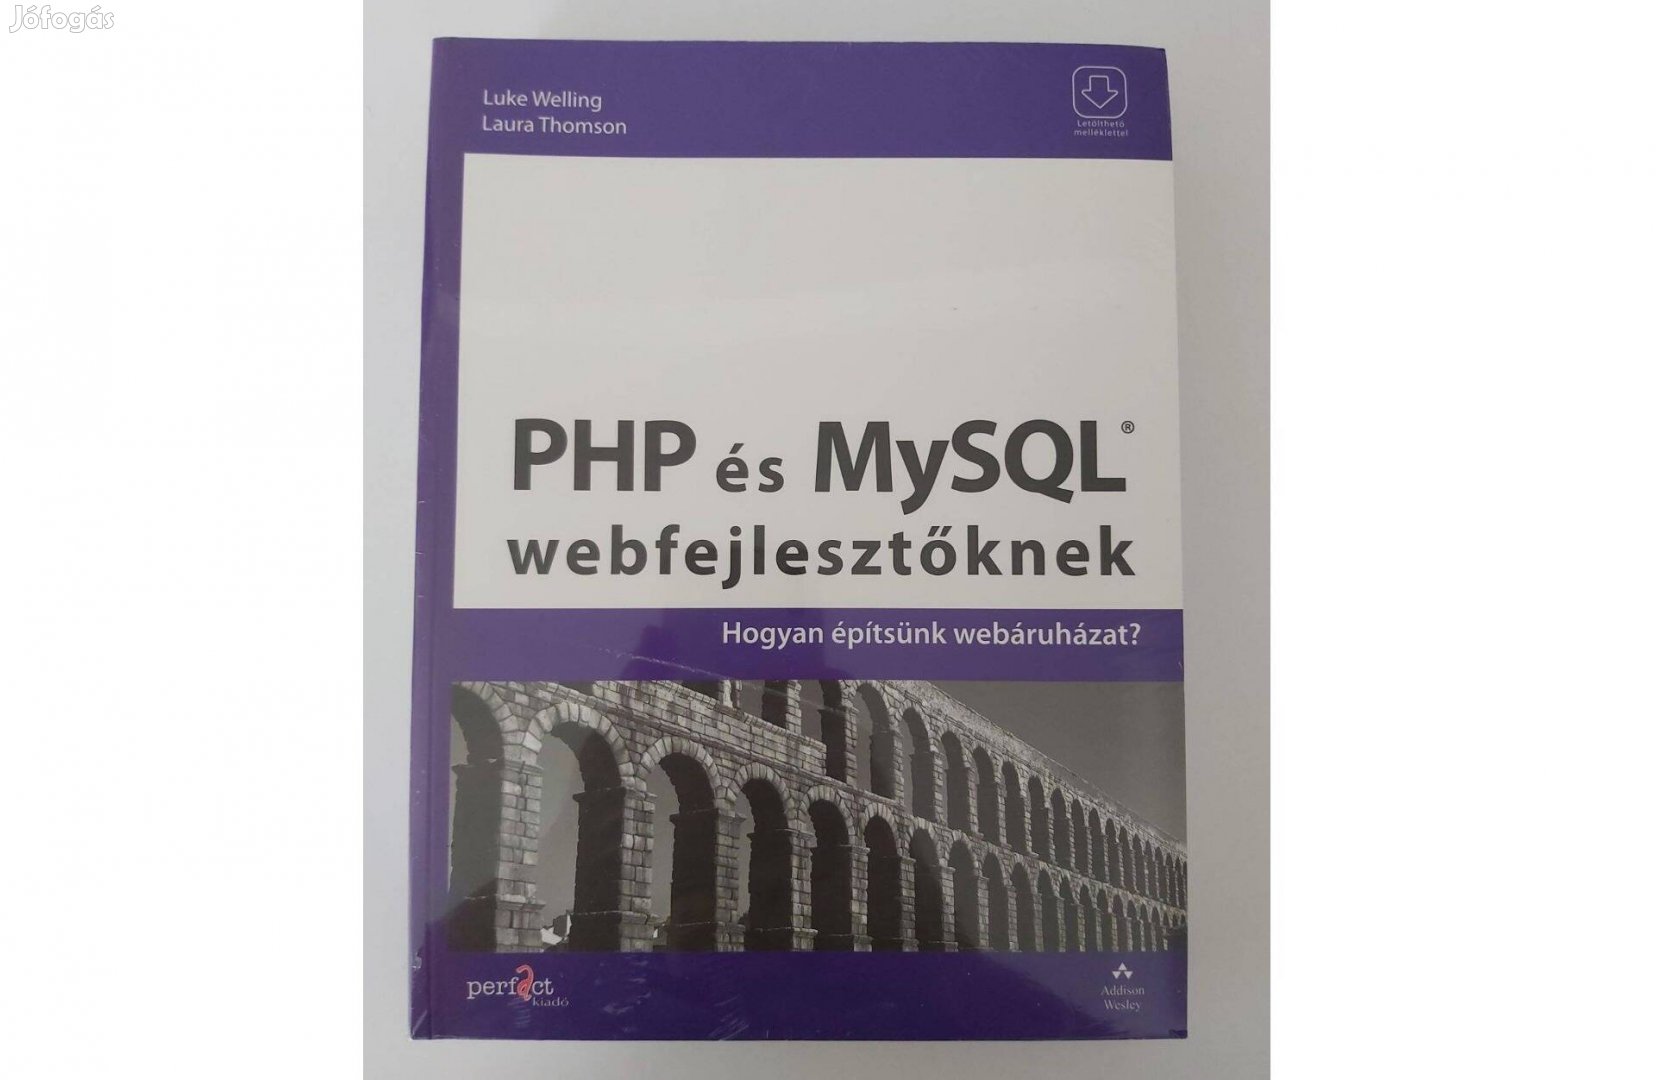 Luke Welling Laura Thomson: PHP és Mysql webfejlesztőknek